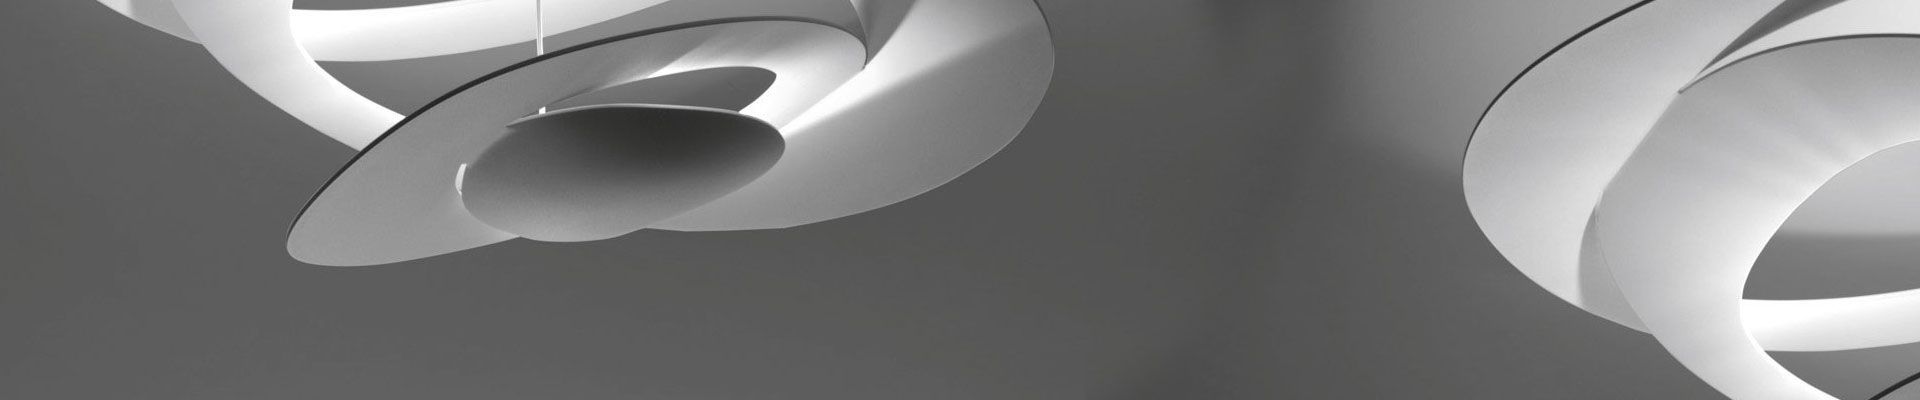 Design Led Plafondlampen Led Plafondlamp Online Kopen Flinders